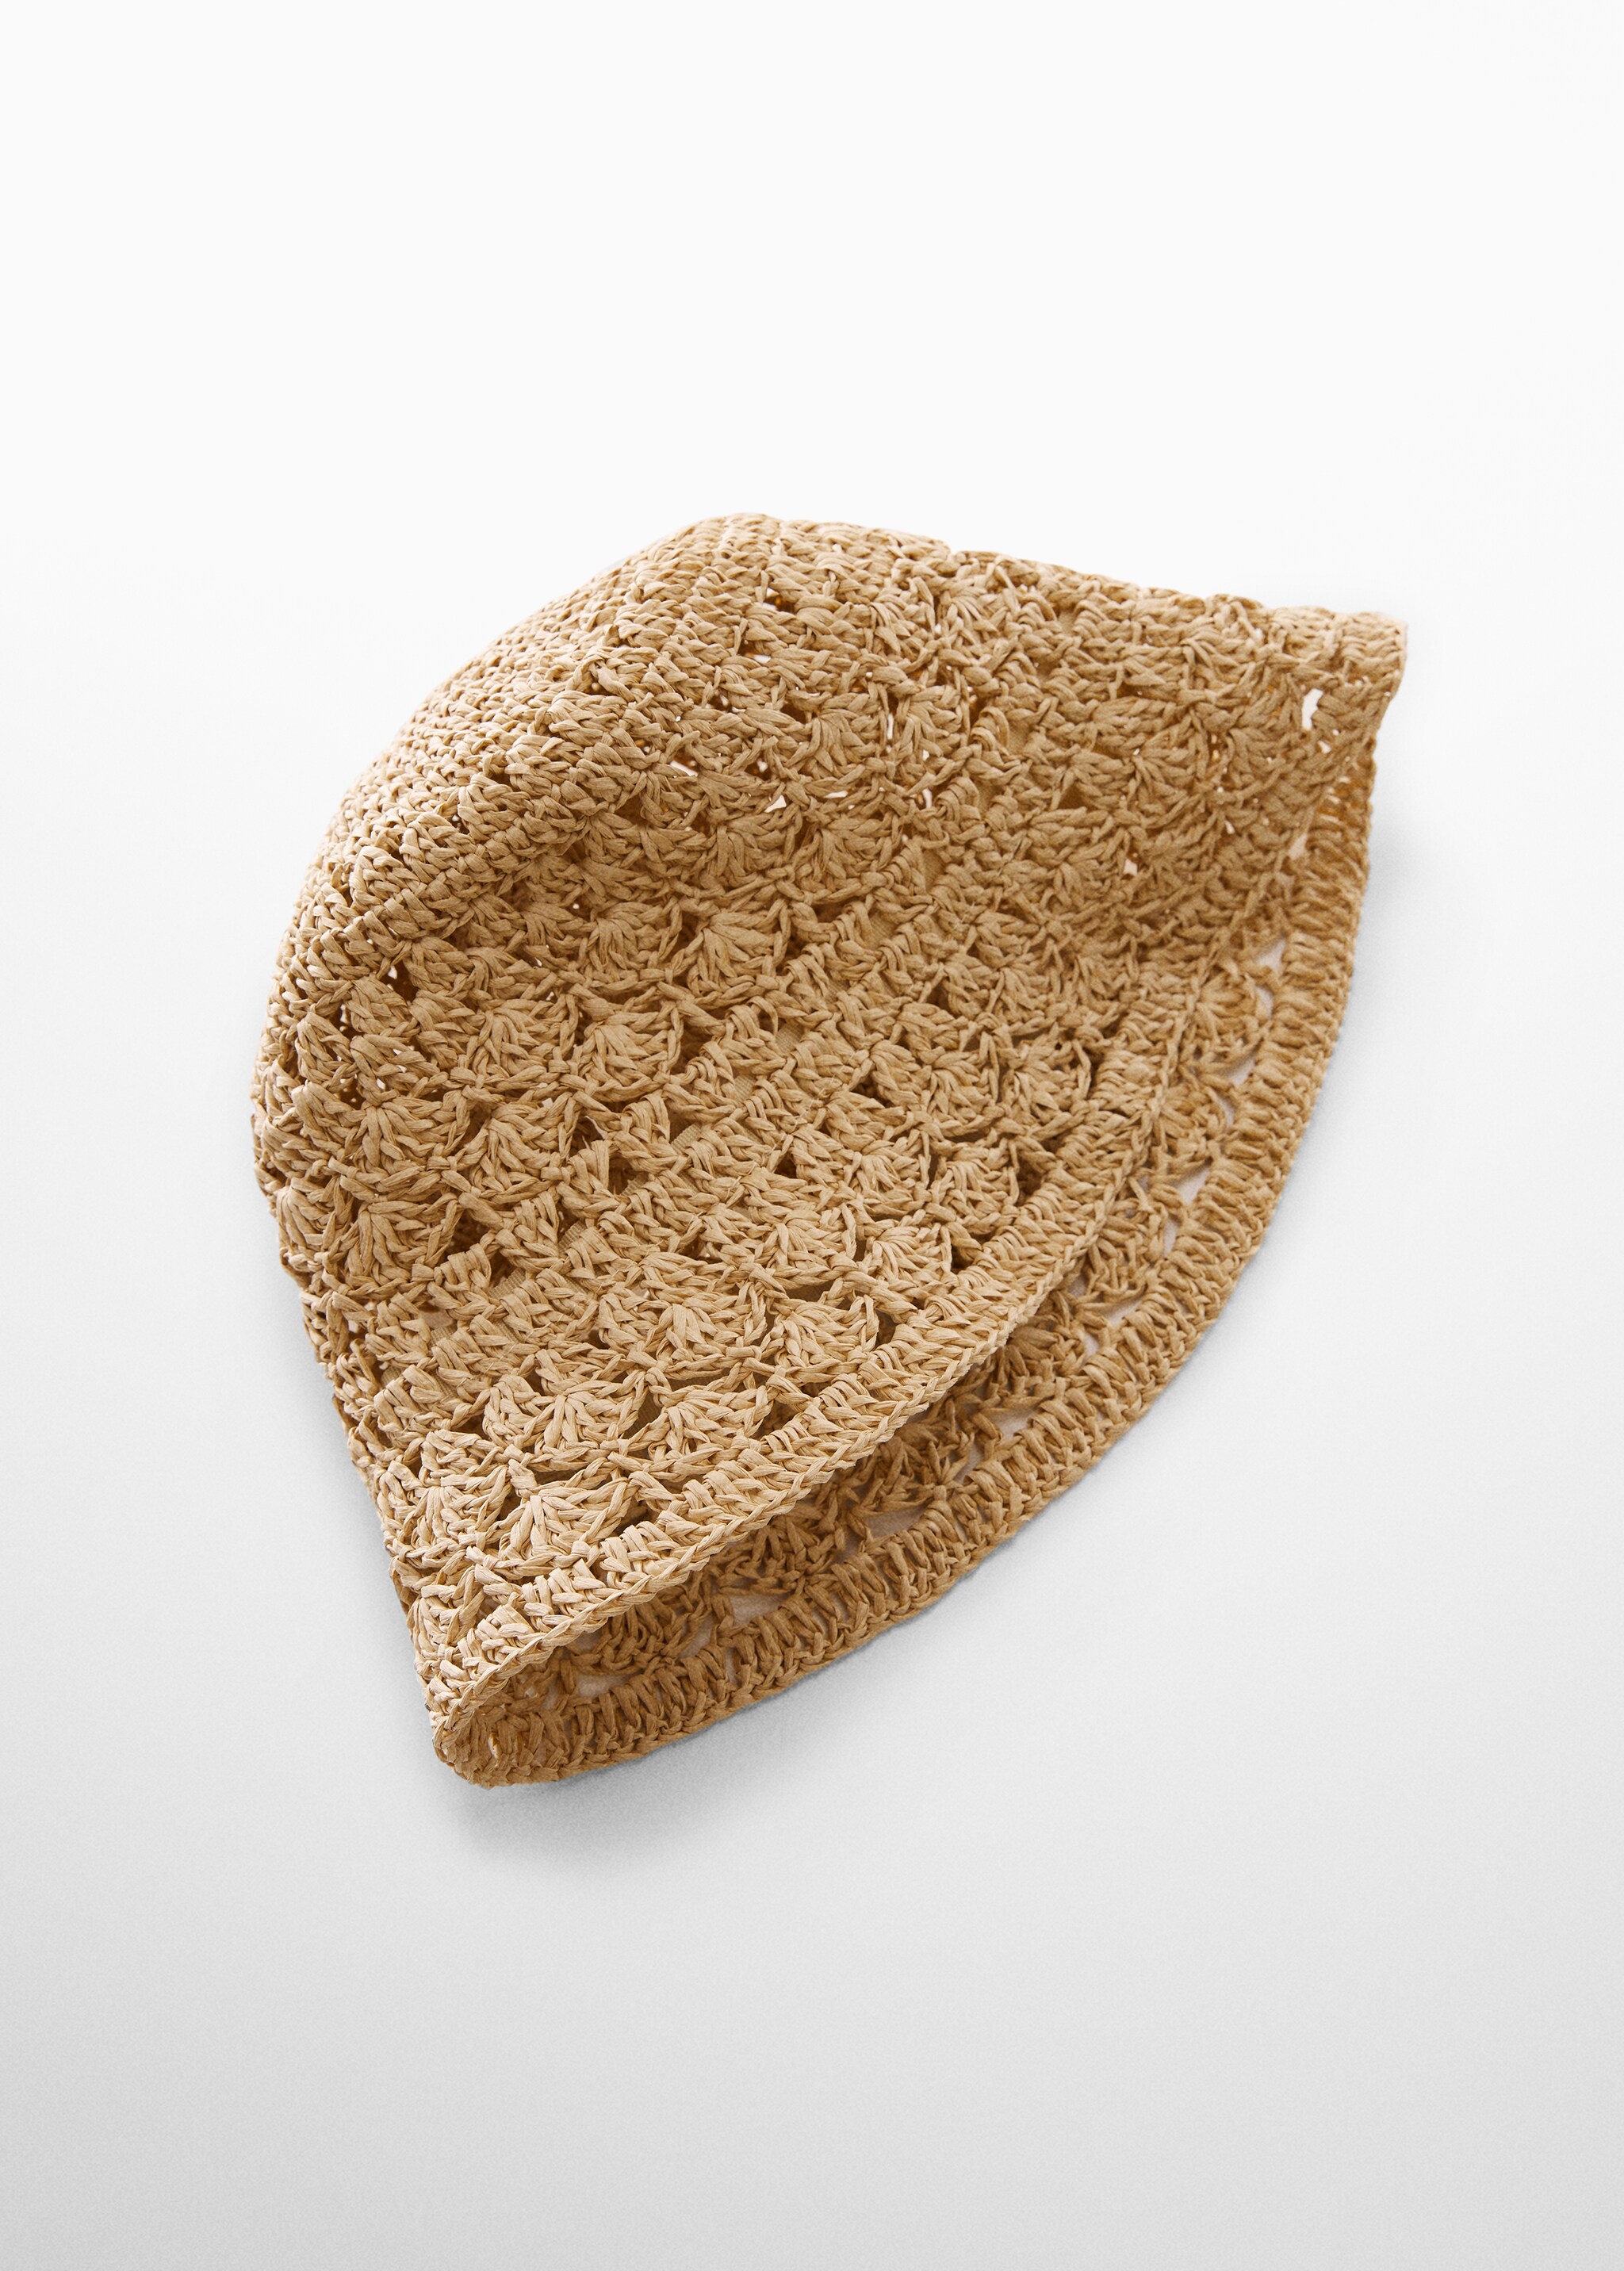 Шляпа из натурального волокна - Средний план